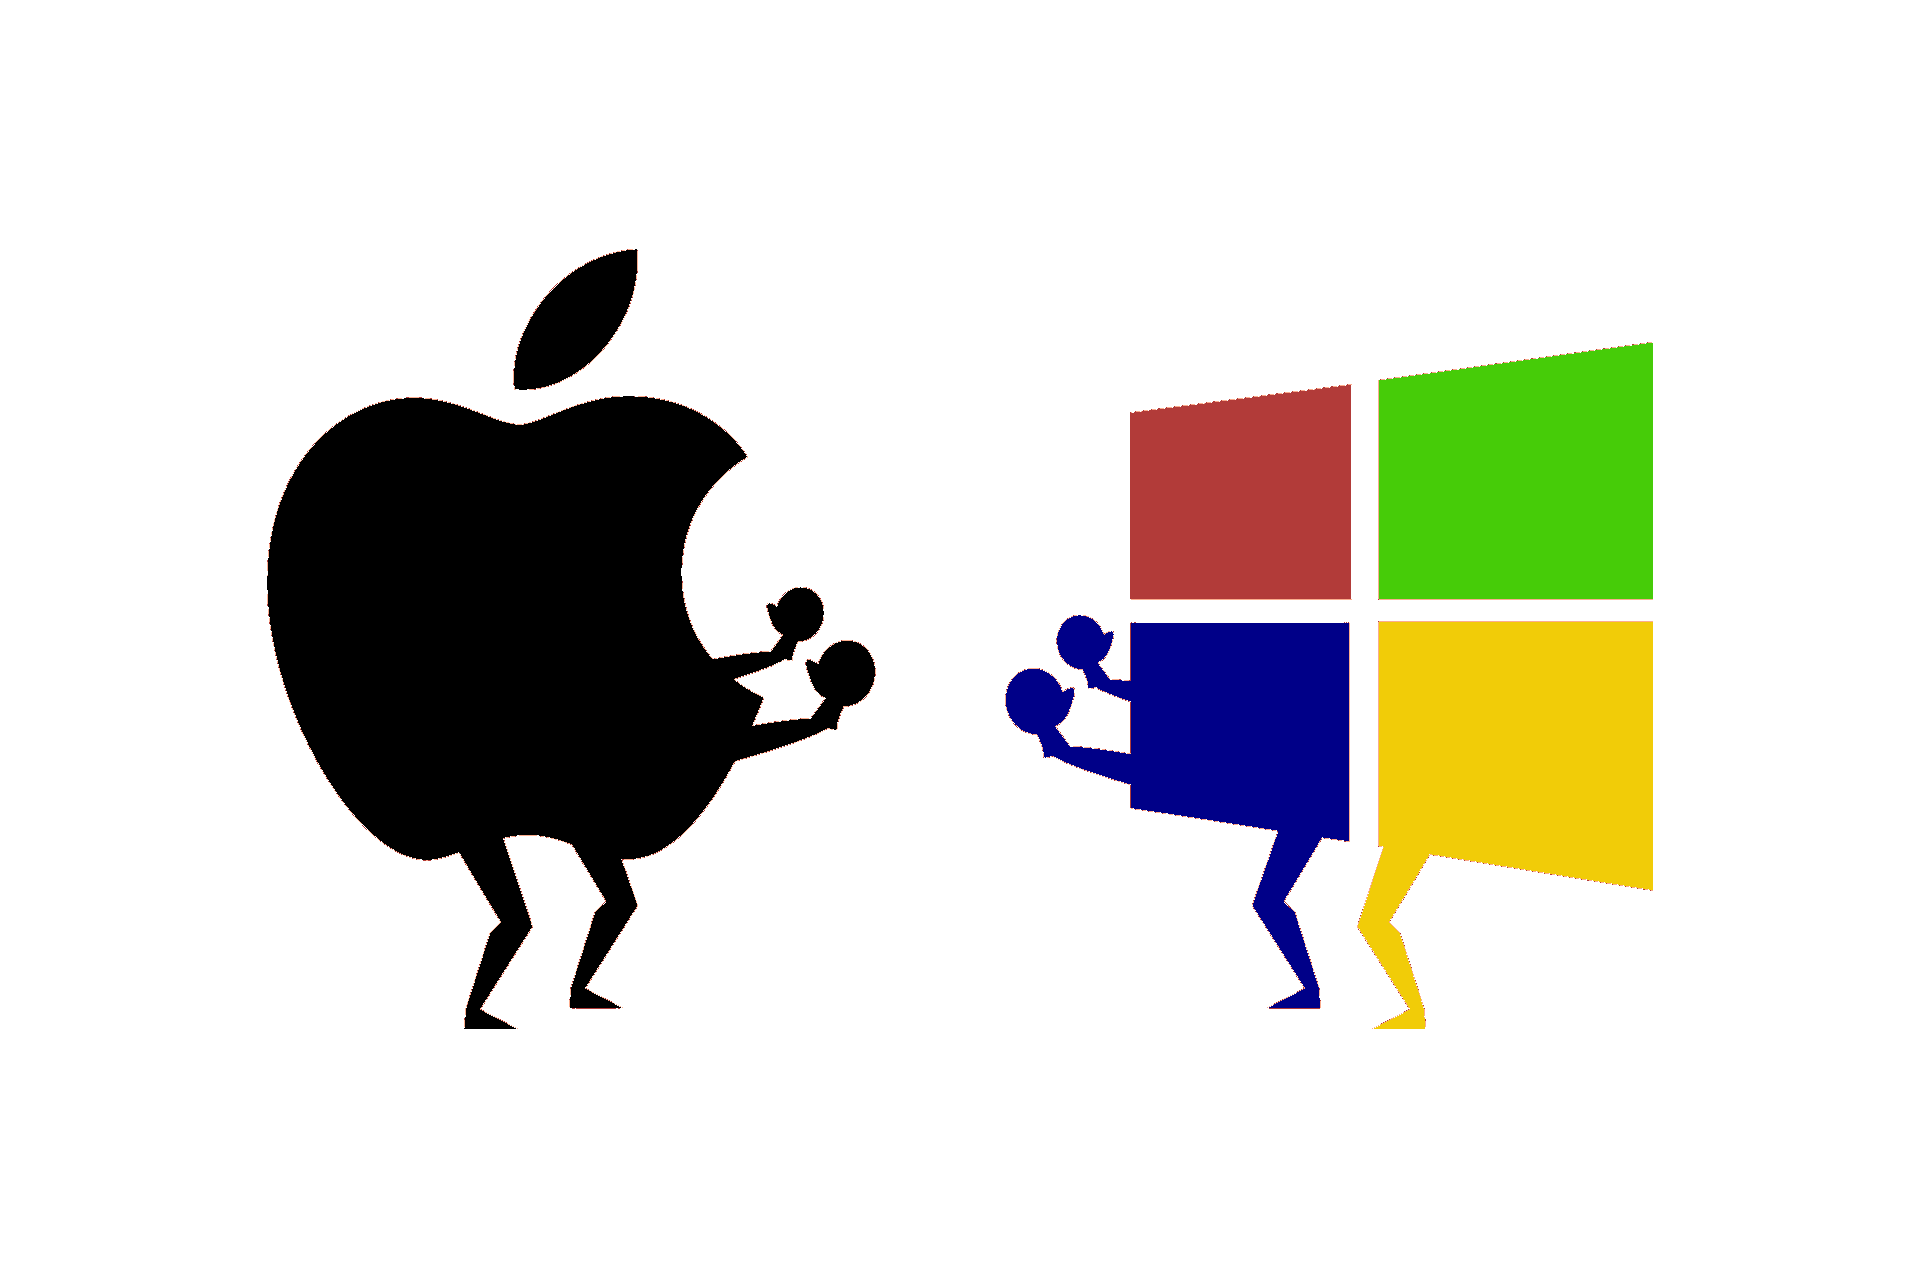 apple vs epic case